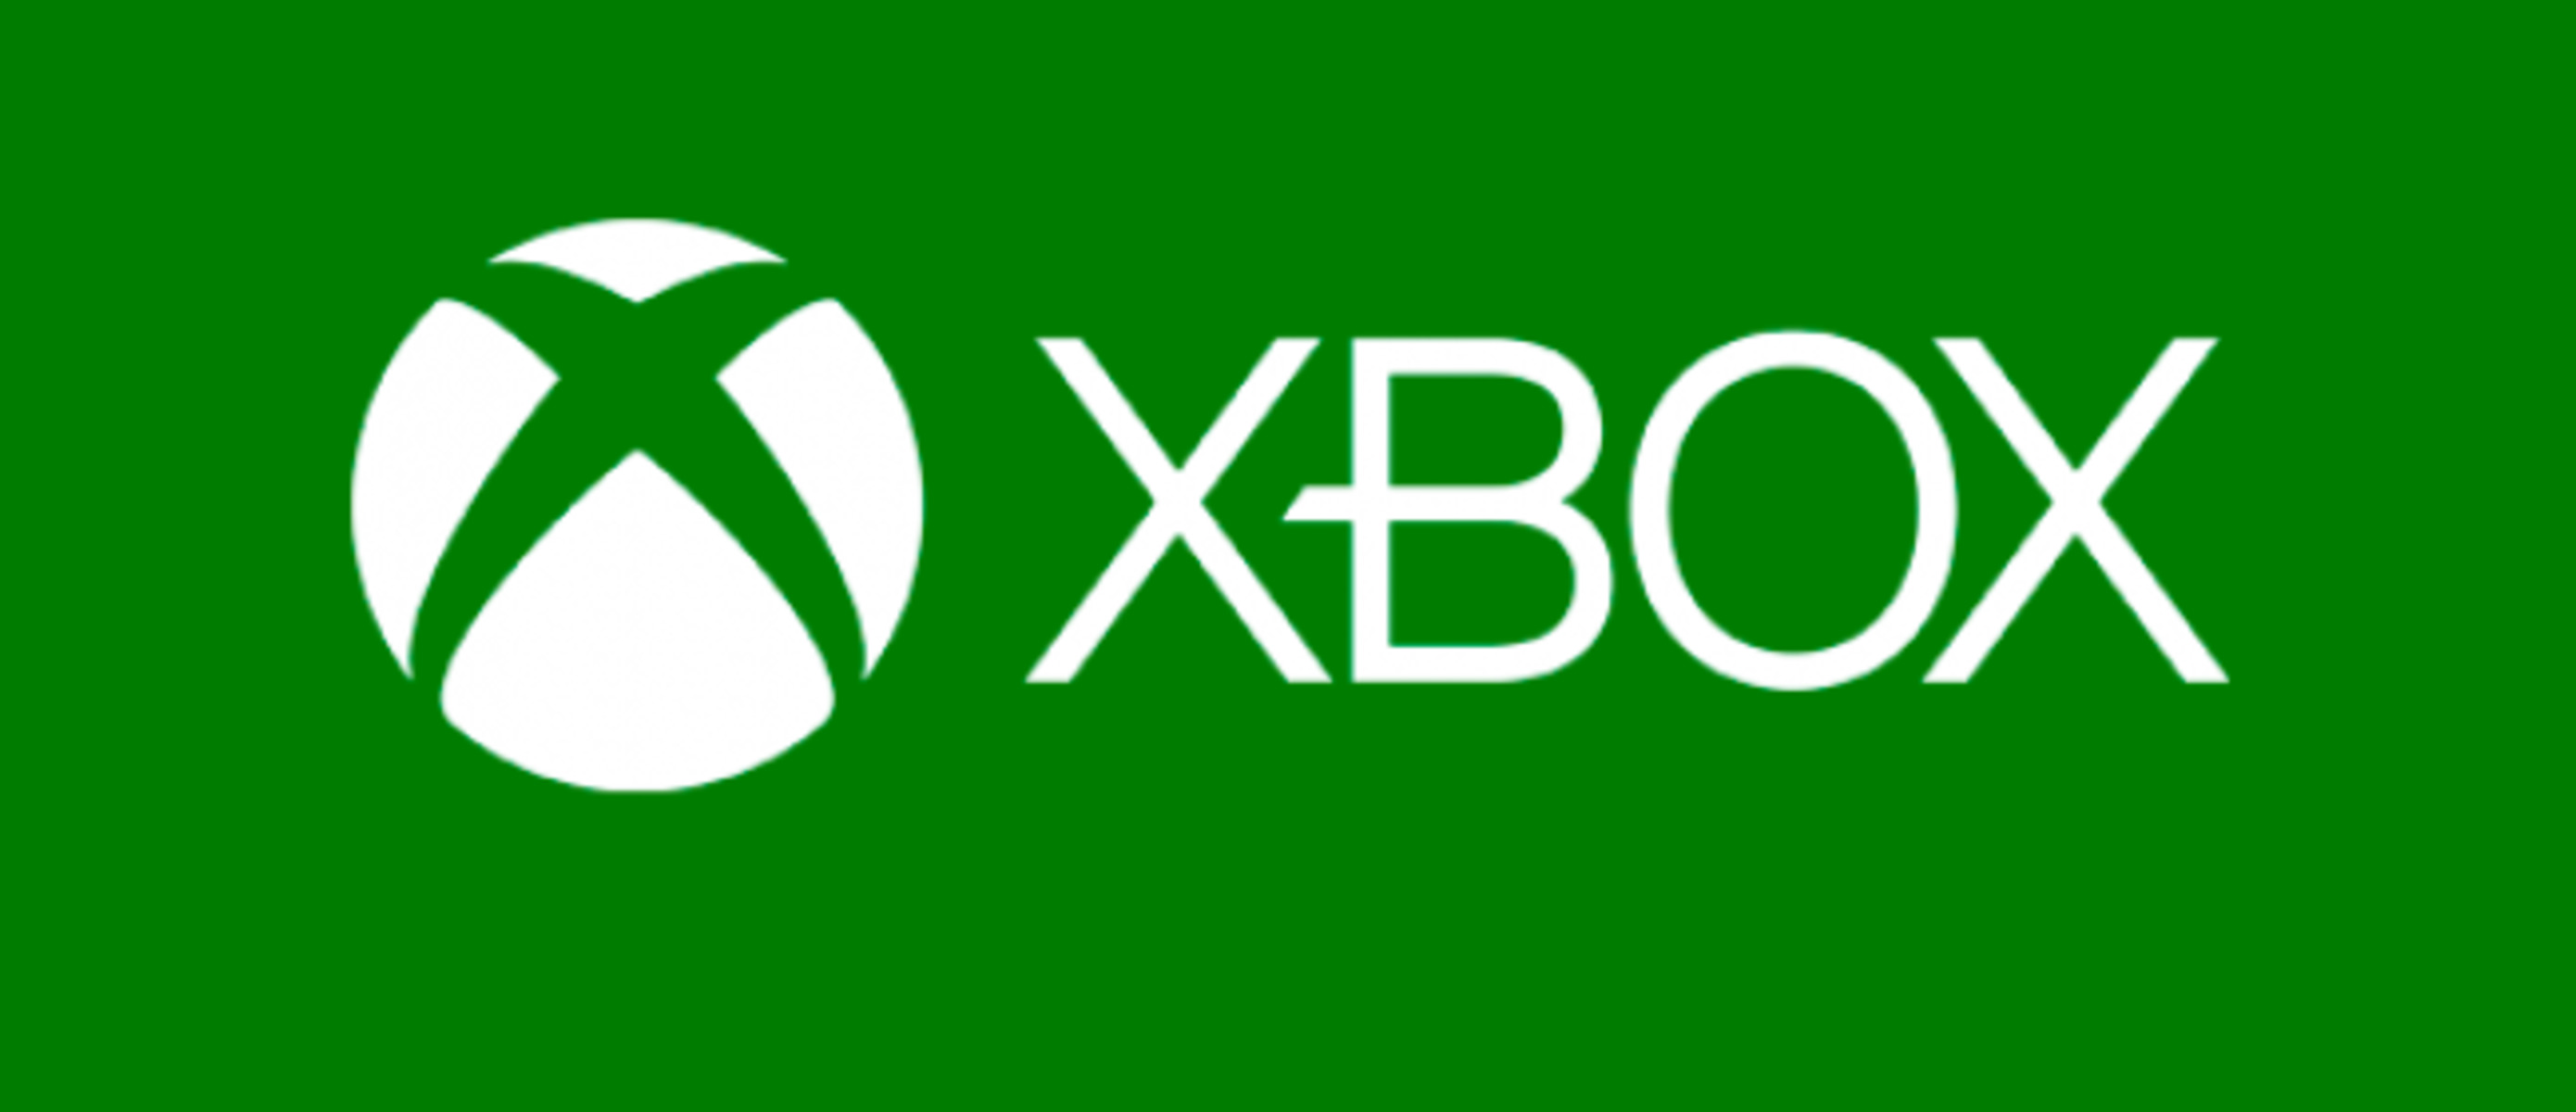 Xbox company. Логотип иксбокс. Ярлык Xbox. Xbox one логотип. Xbox 360 логотип.